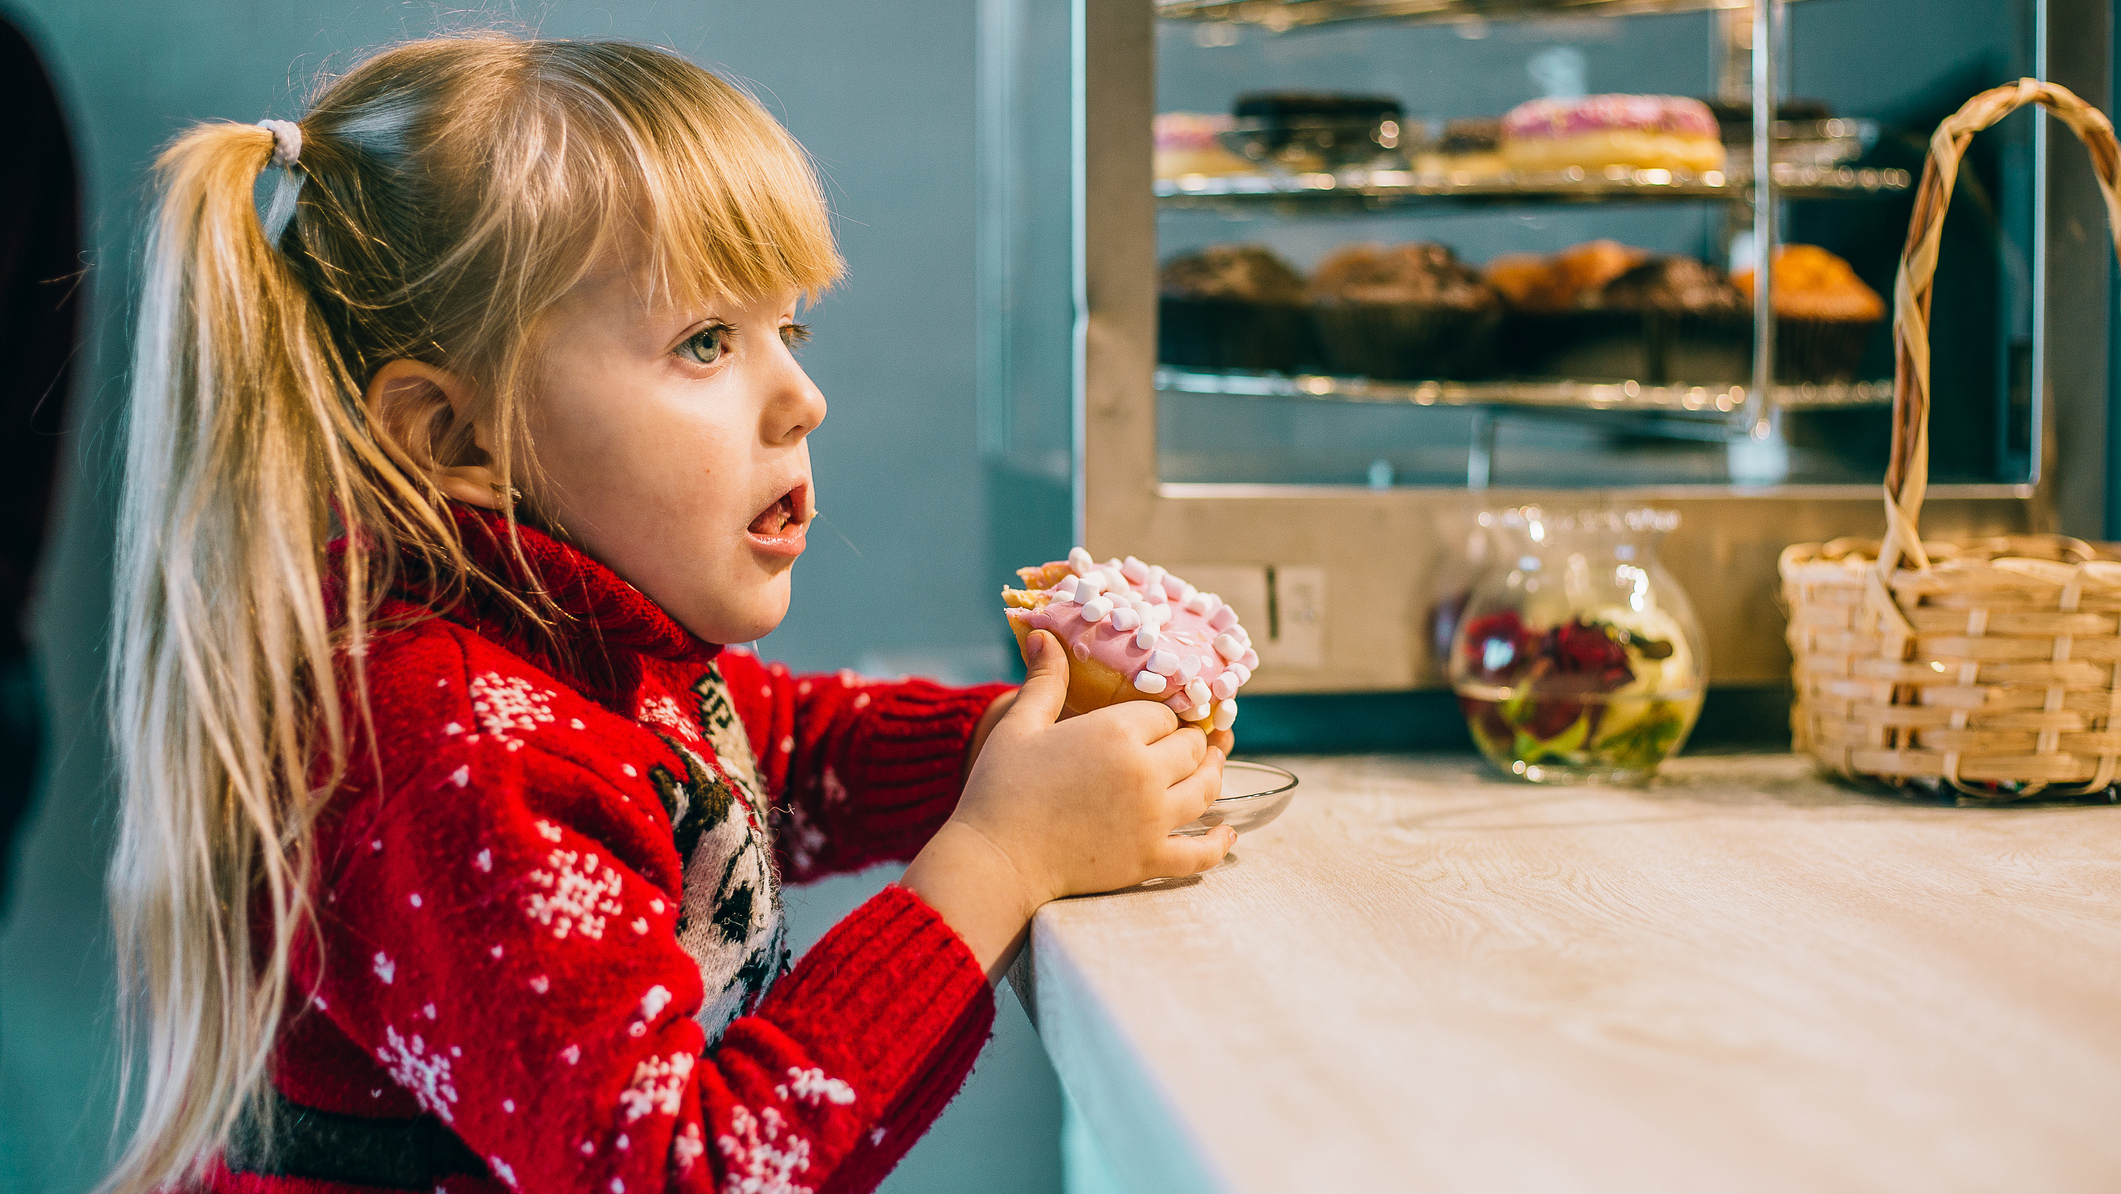 No está claro aún por qué el impuesto al azúcar podría afectar la prevalencia de la obesidad en niñas y niños de manera diferente, especialmente porque los niños son mayores consumidores de bebidas azucaradas
(Getty Images)